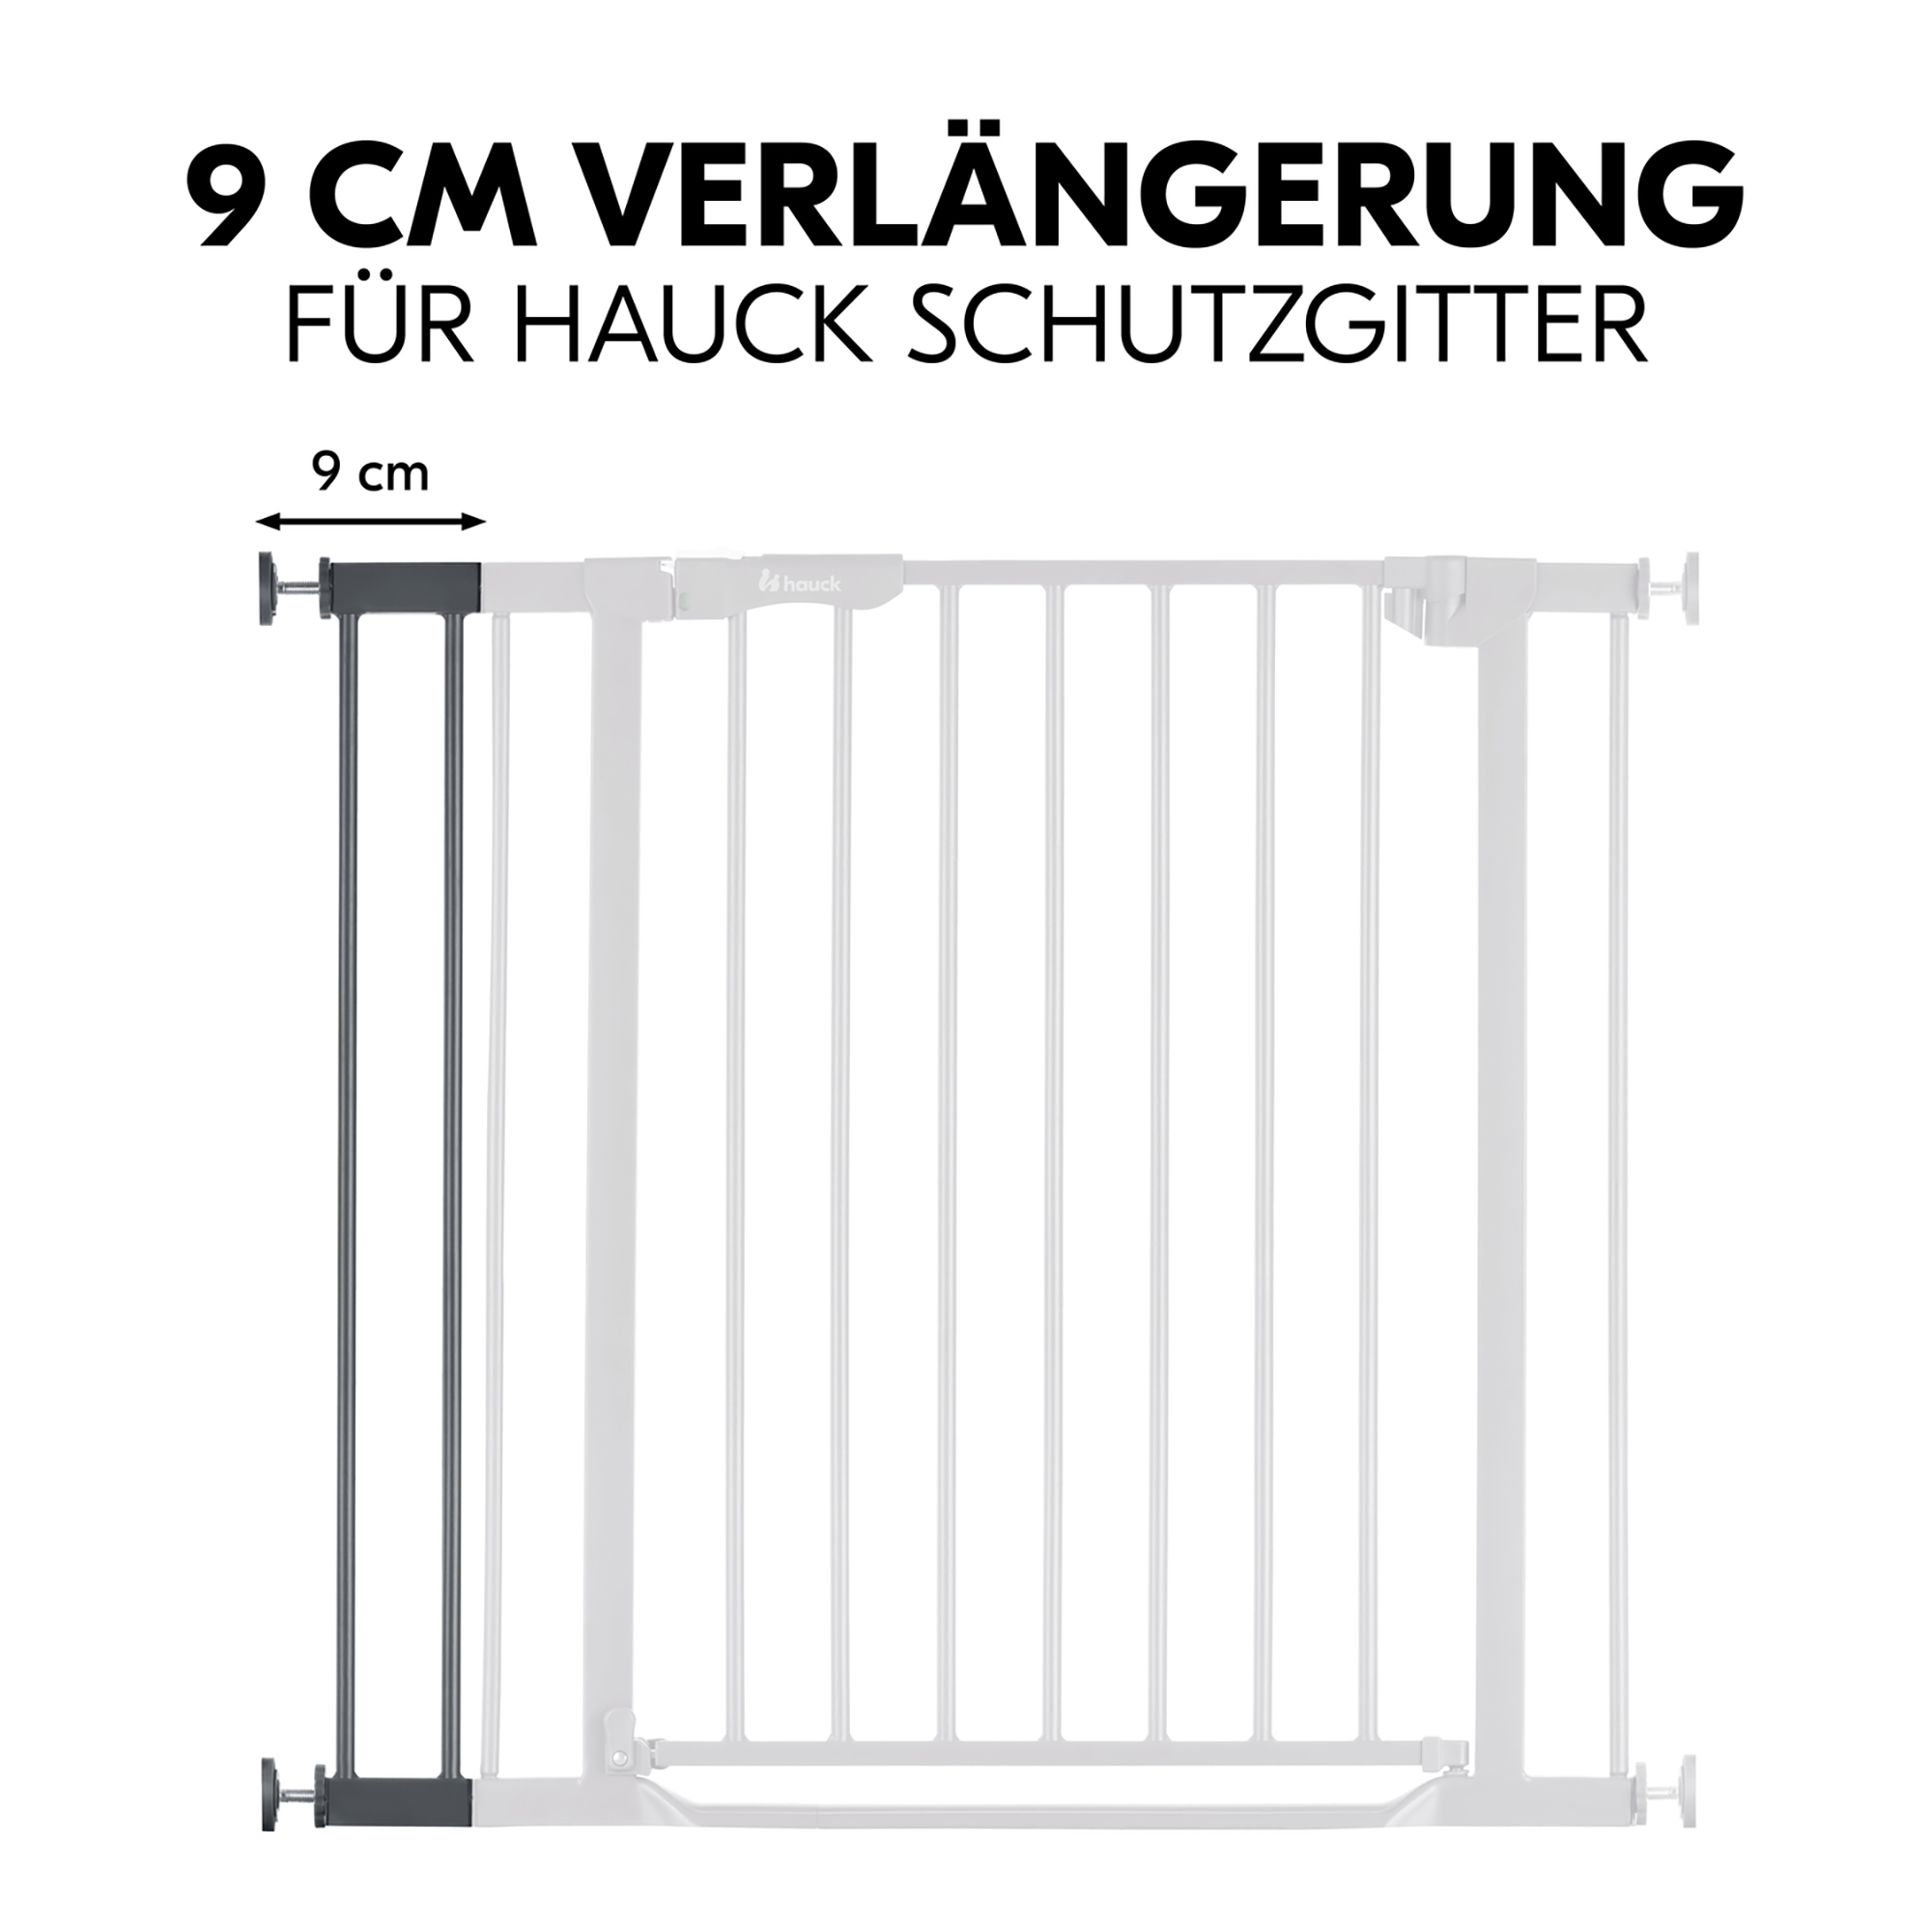 Universal Verlängerung 9cm für hauck Schutzgitter hauck Grau Grau 2000585365905 2